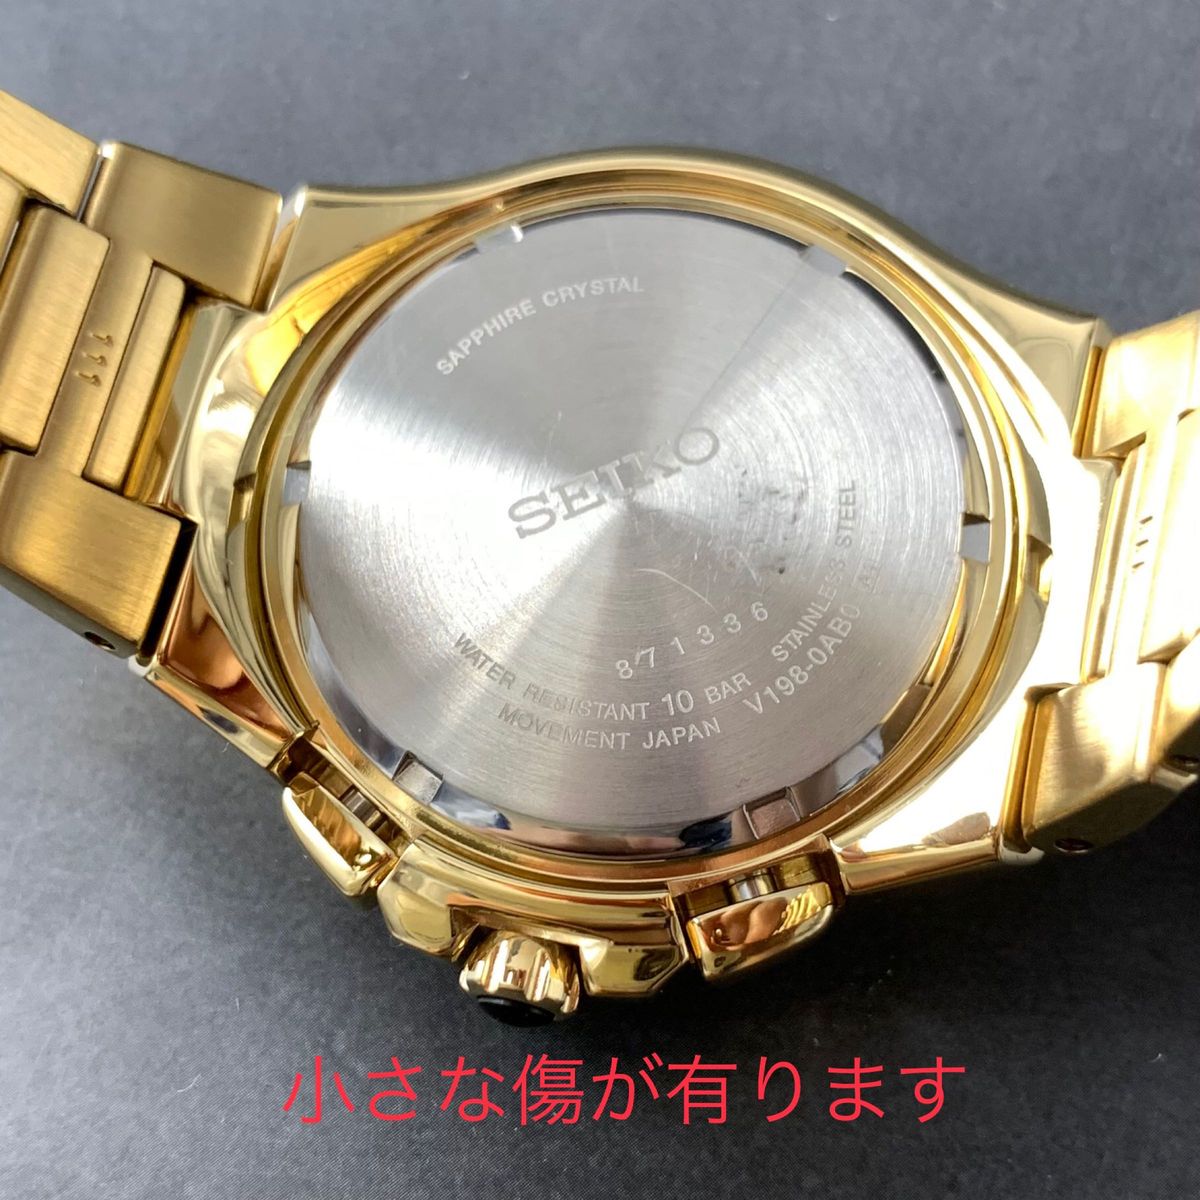 【新品訳あり】セイコー上級コーチュラ SSC700 パーペチュアル クロノグラフ ソーラー SEIKO メンズ腕時計 ゴールド